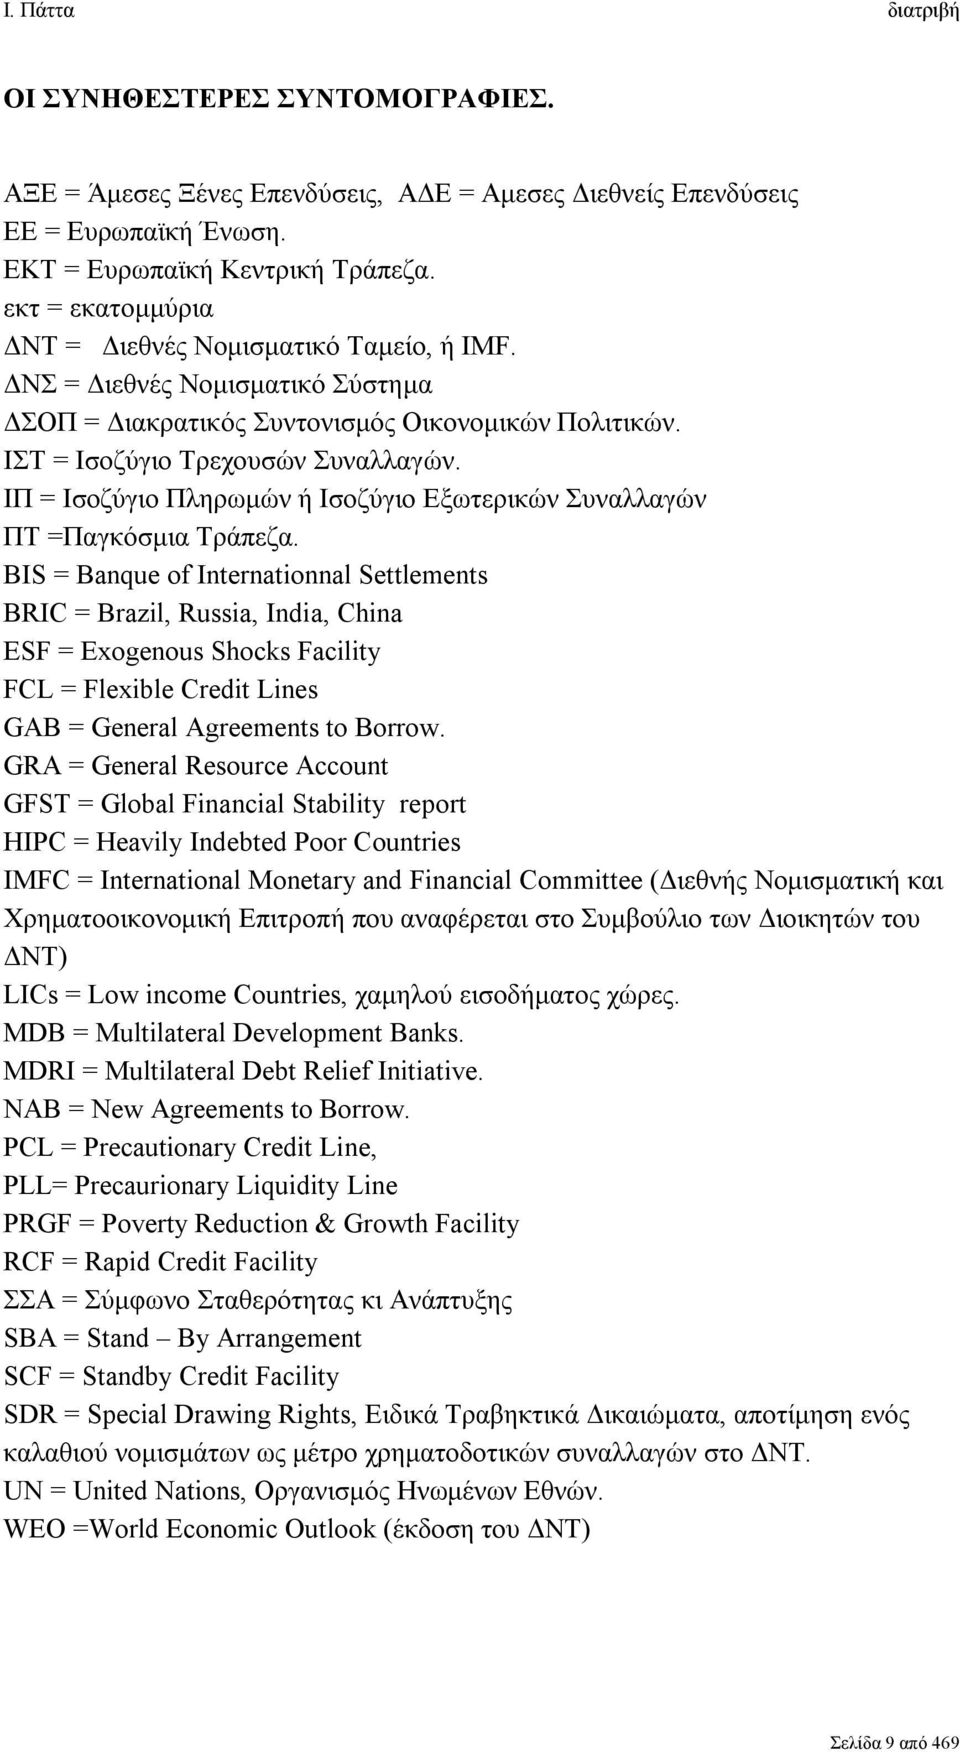 ΙΠ = Ισοζύγιο Πληρωμών ή Ισοζύγιο Εξωτερικών Συναλλαγών ΠΤ =Παγκόσμια Τράπεζα.